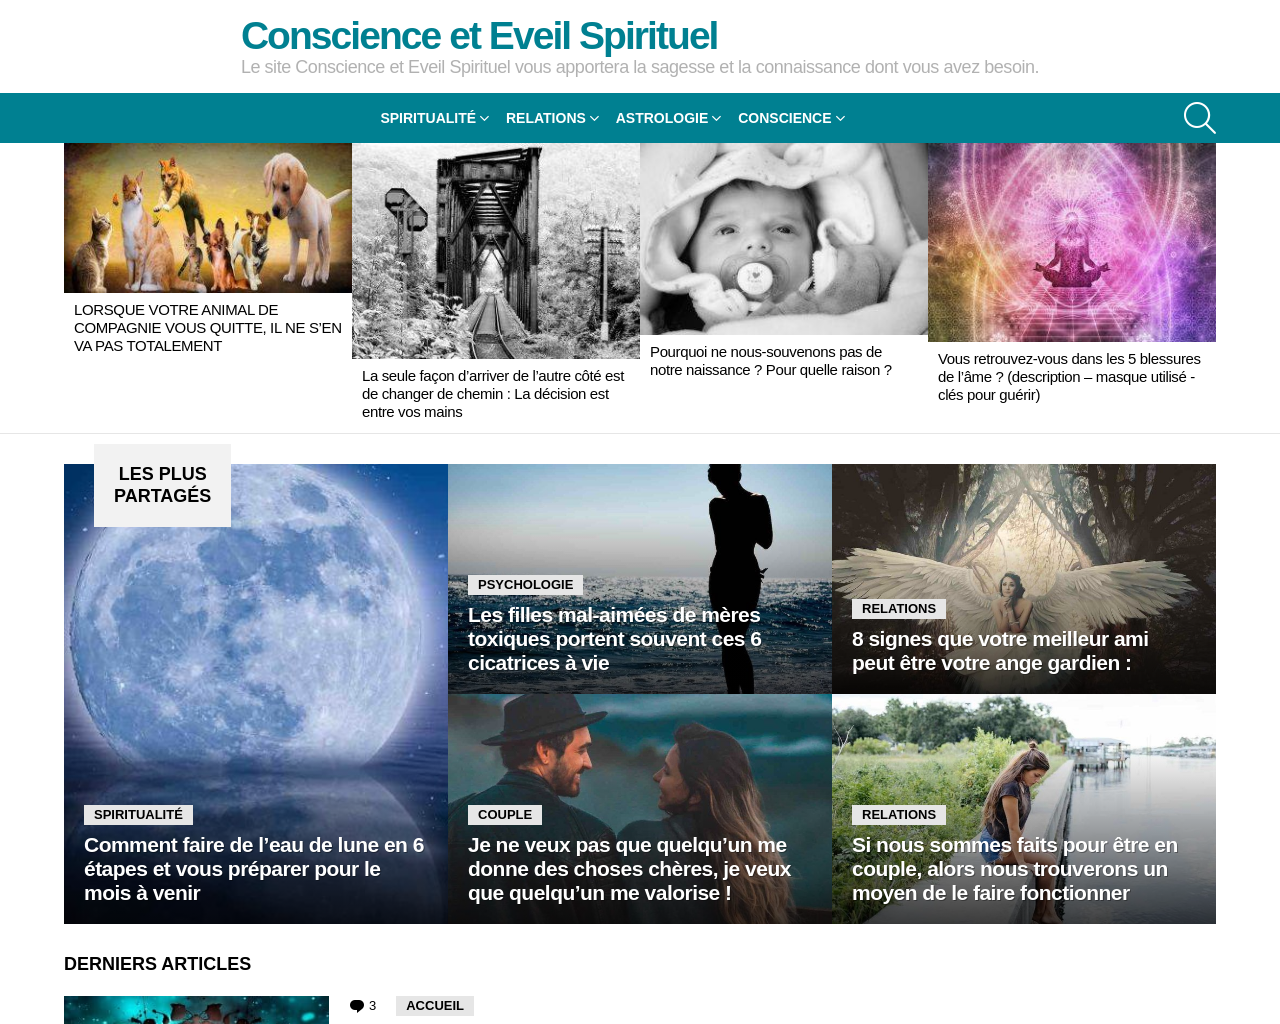 www.conscience-et-eveil-spirituel.com